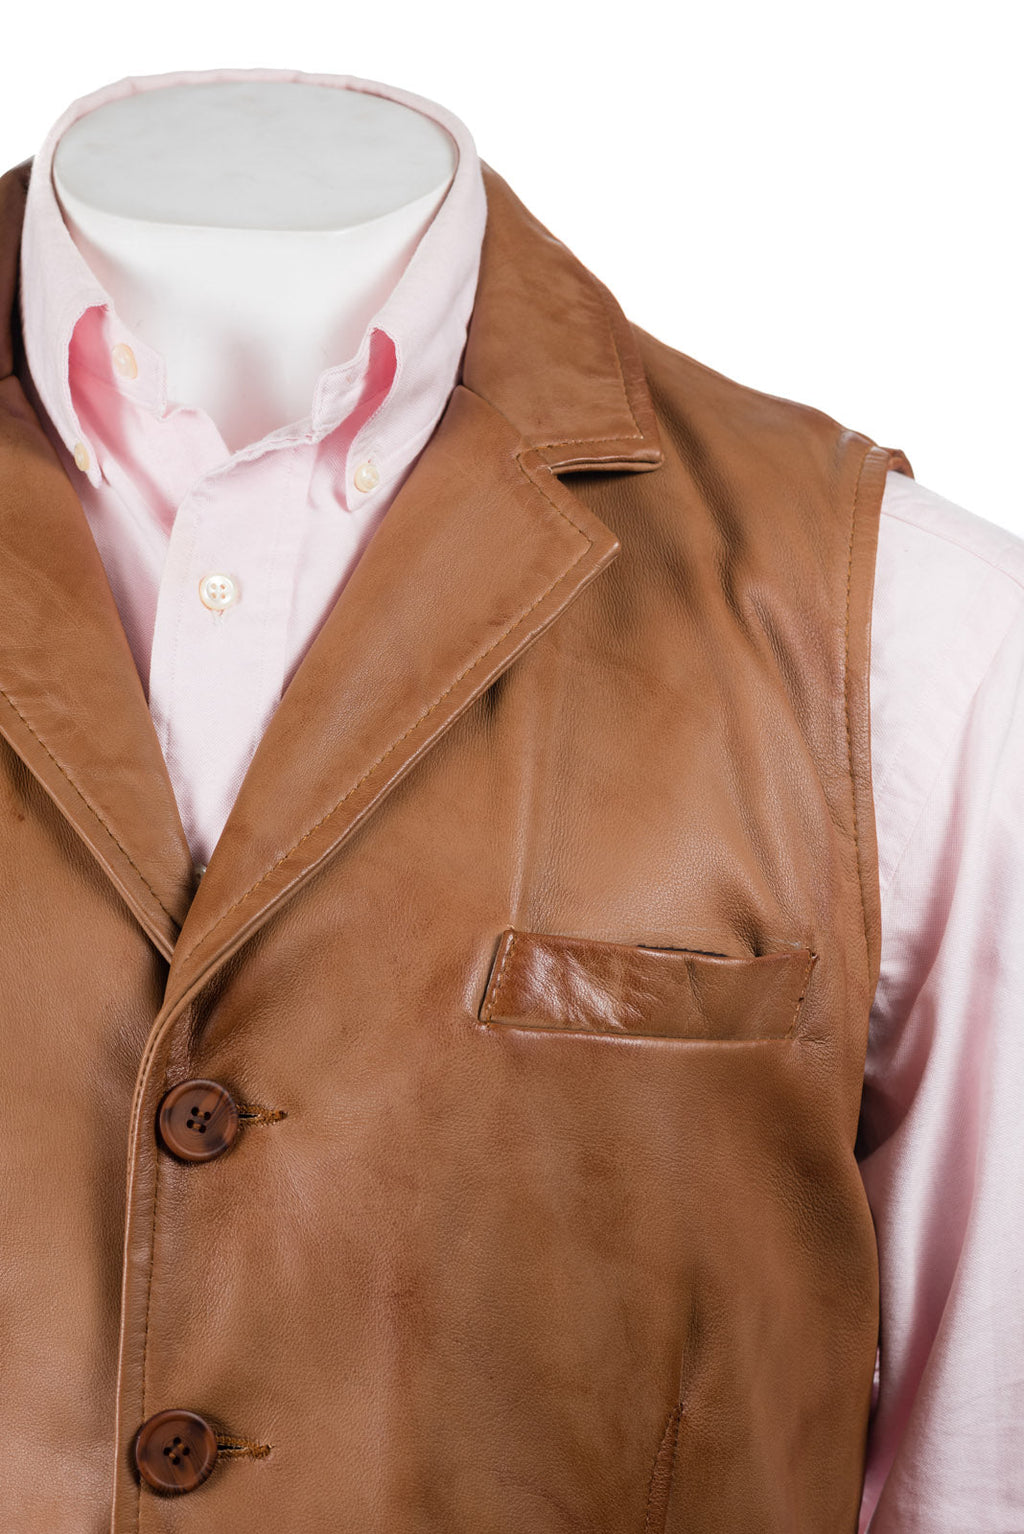 Men's Antique Cognac Collared Button-Up Leather Waistcoat: Aurelio